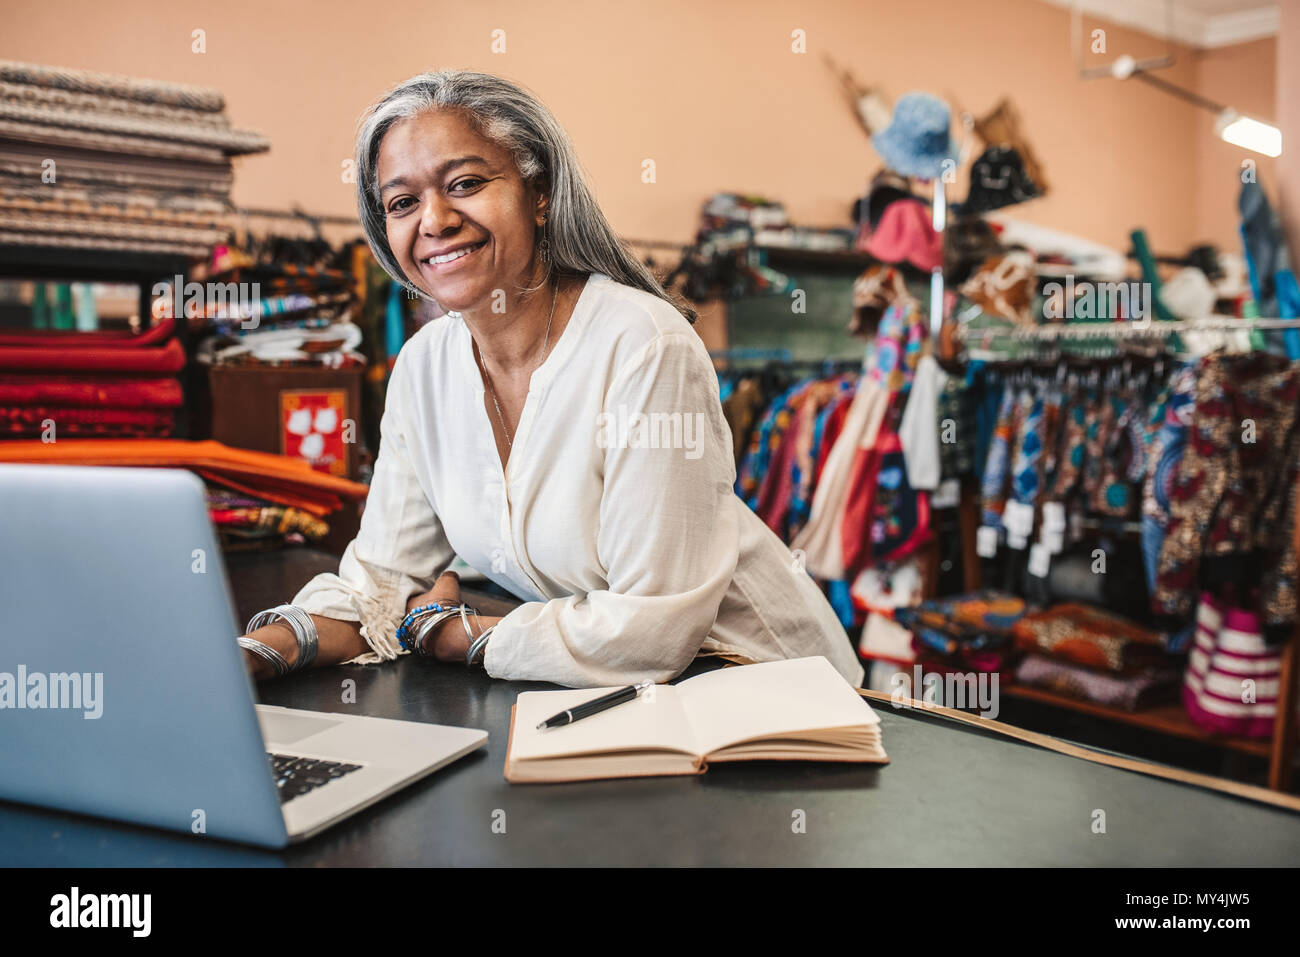 Porträt eines lächelnden reife Stoff shop besitzer, der an einem Notebook arbeitet und schreiben Sie sich Notizen zu Ihren store Counter von bunten Textilien umgeben Stockfoto